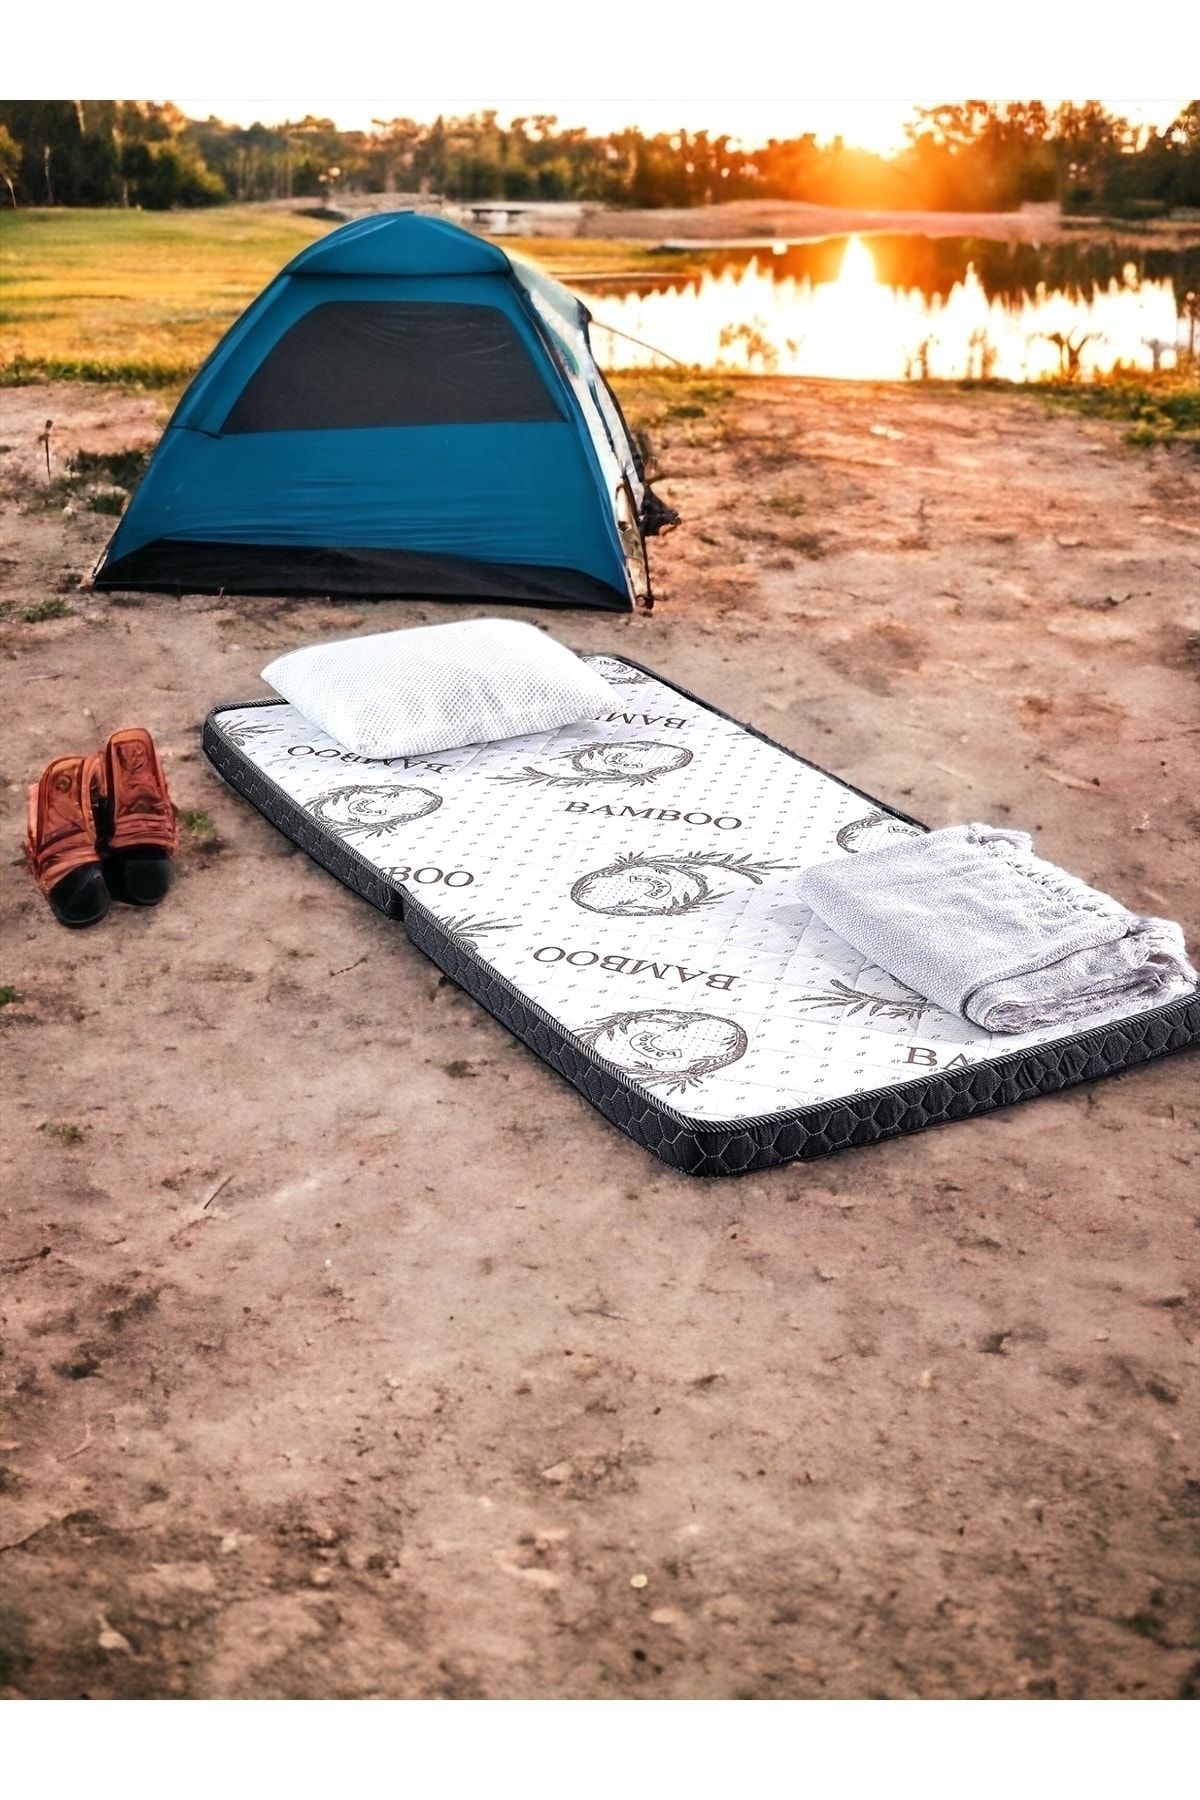 MADAME GARDEN Yatak Yer Yatağı Kamp Yatağı Tek Kişilik Sünger Katlanır Yatak Yer Ve Kamp Yatağı